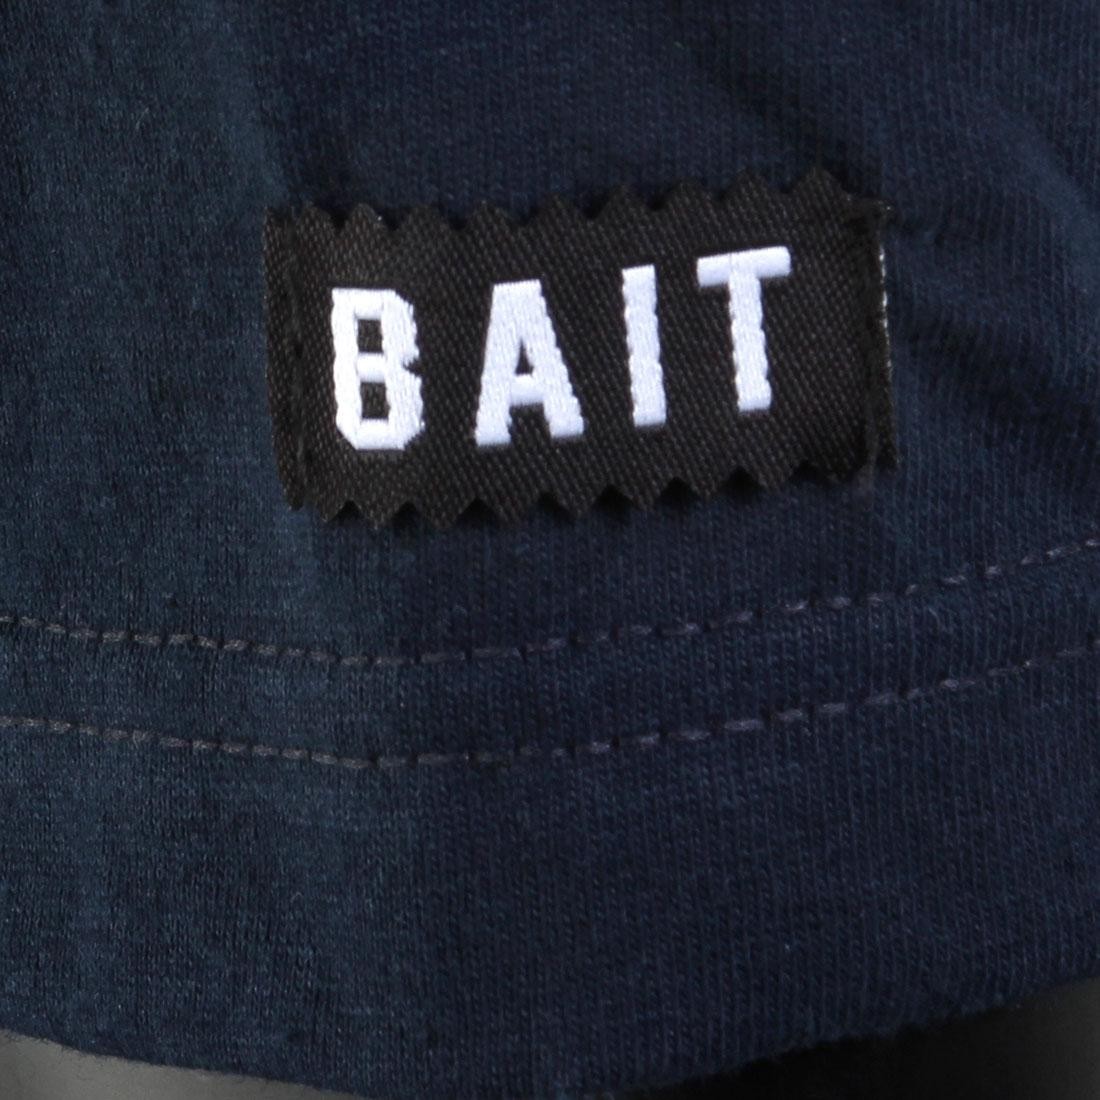 BAIT Superior BAIT Tee (navy / white / green)